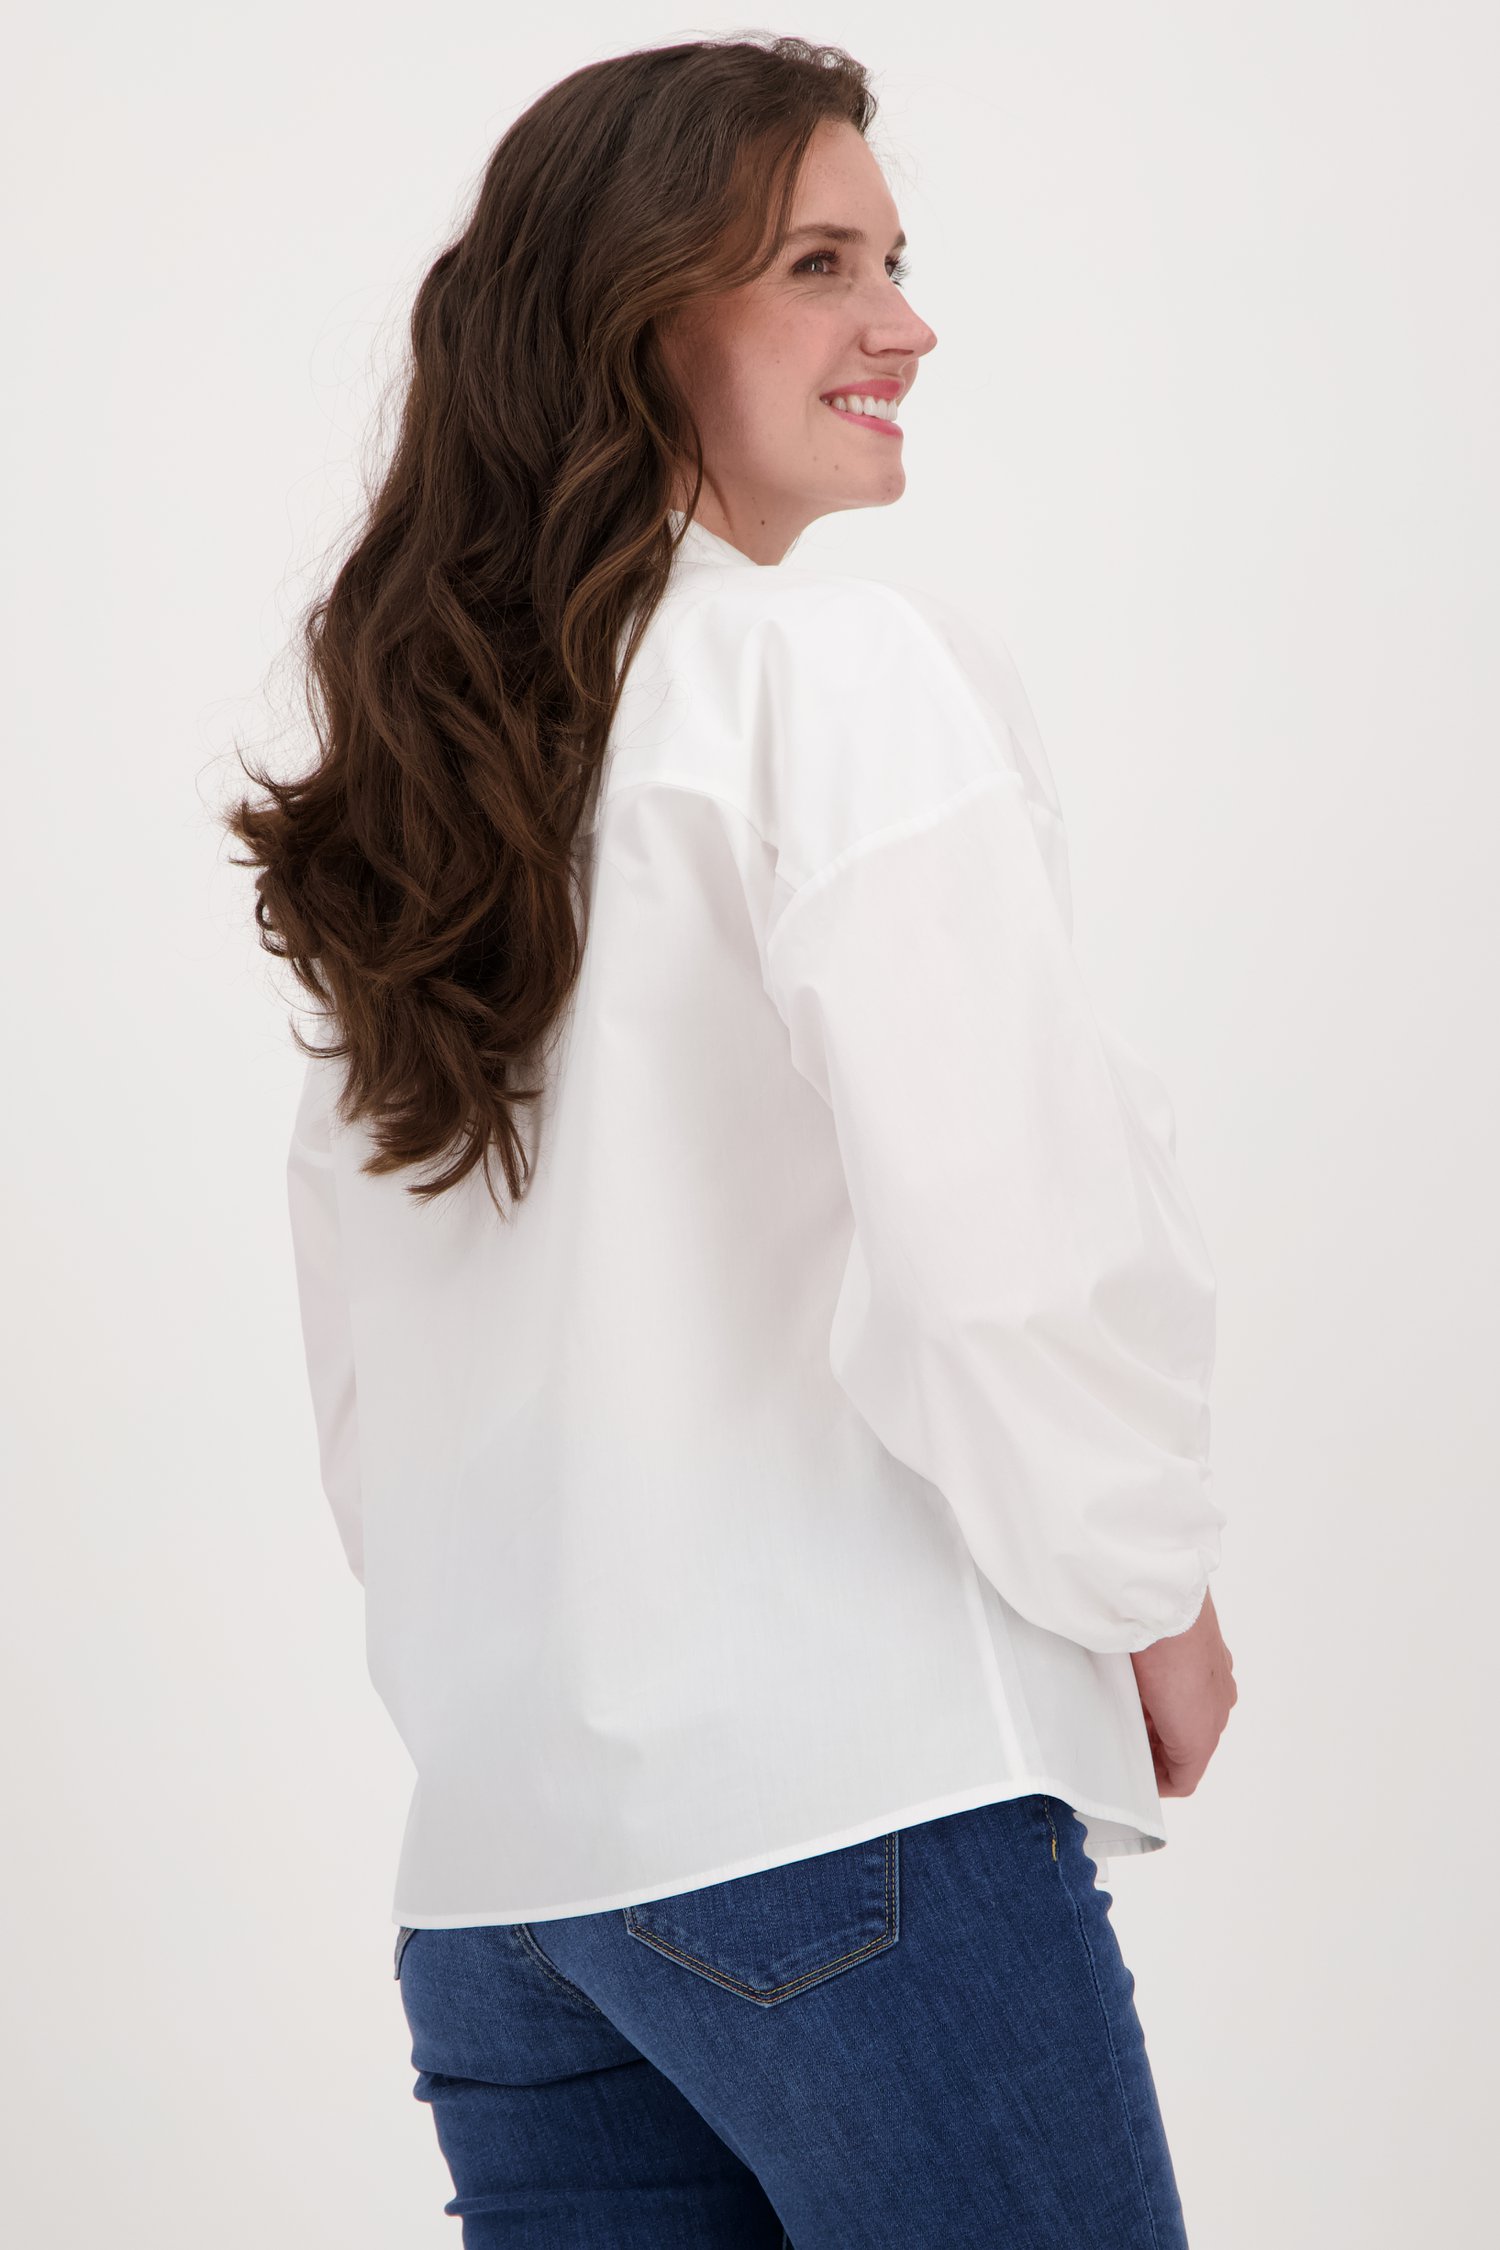 Witte blouse met ballonmouwen van More & More voor Dames